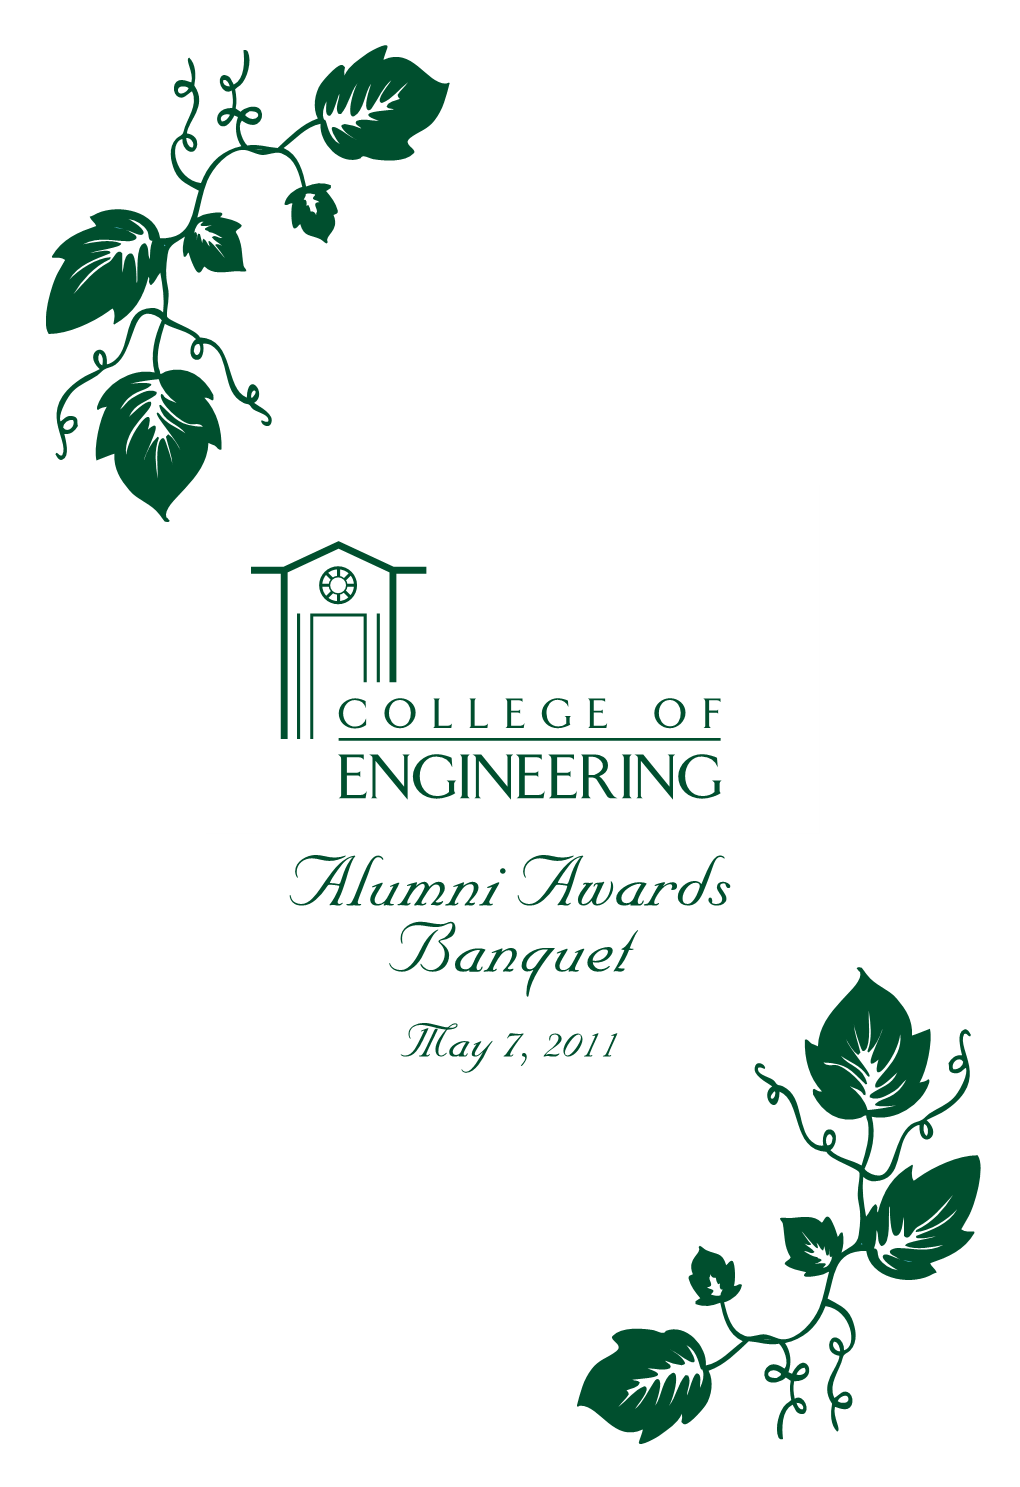 Alumni Awards Banquet May 7, 2011